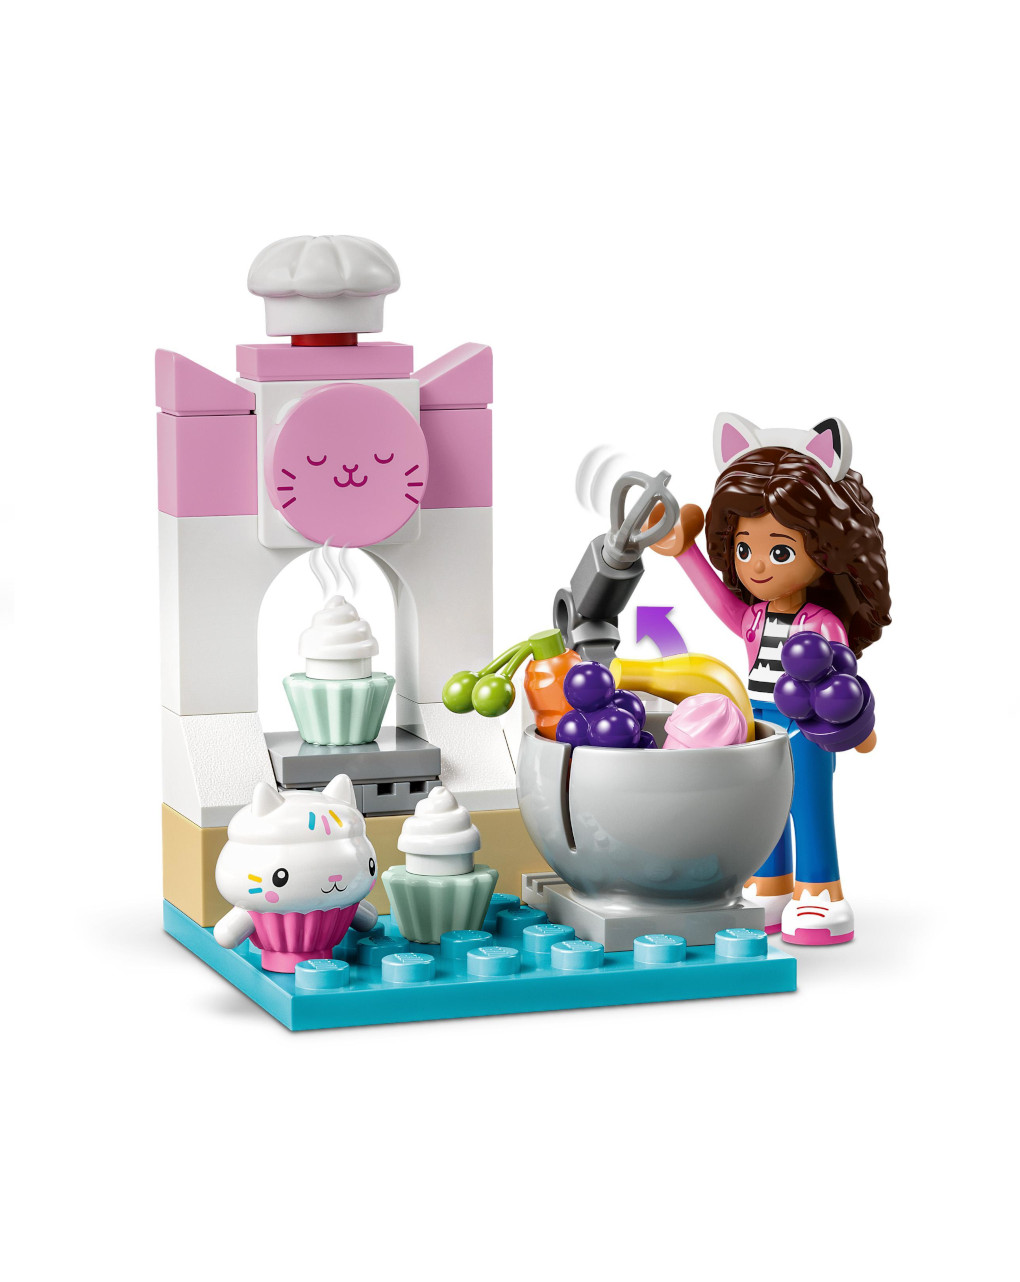 Divertimento in cucina con dolcetto 10785 -  lego gabby dollhouse - LEGO